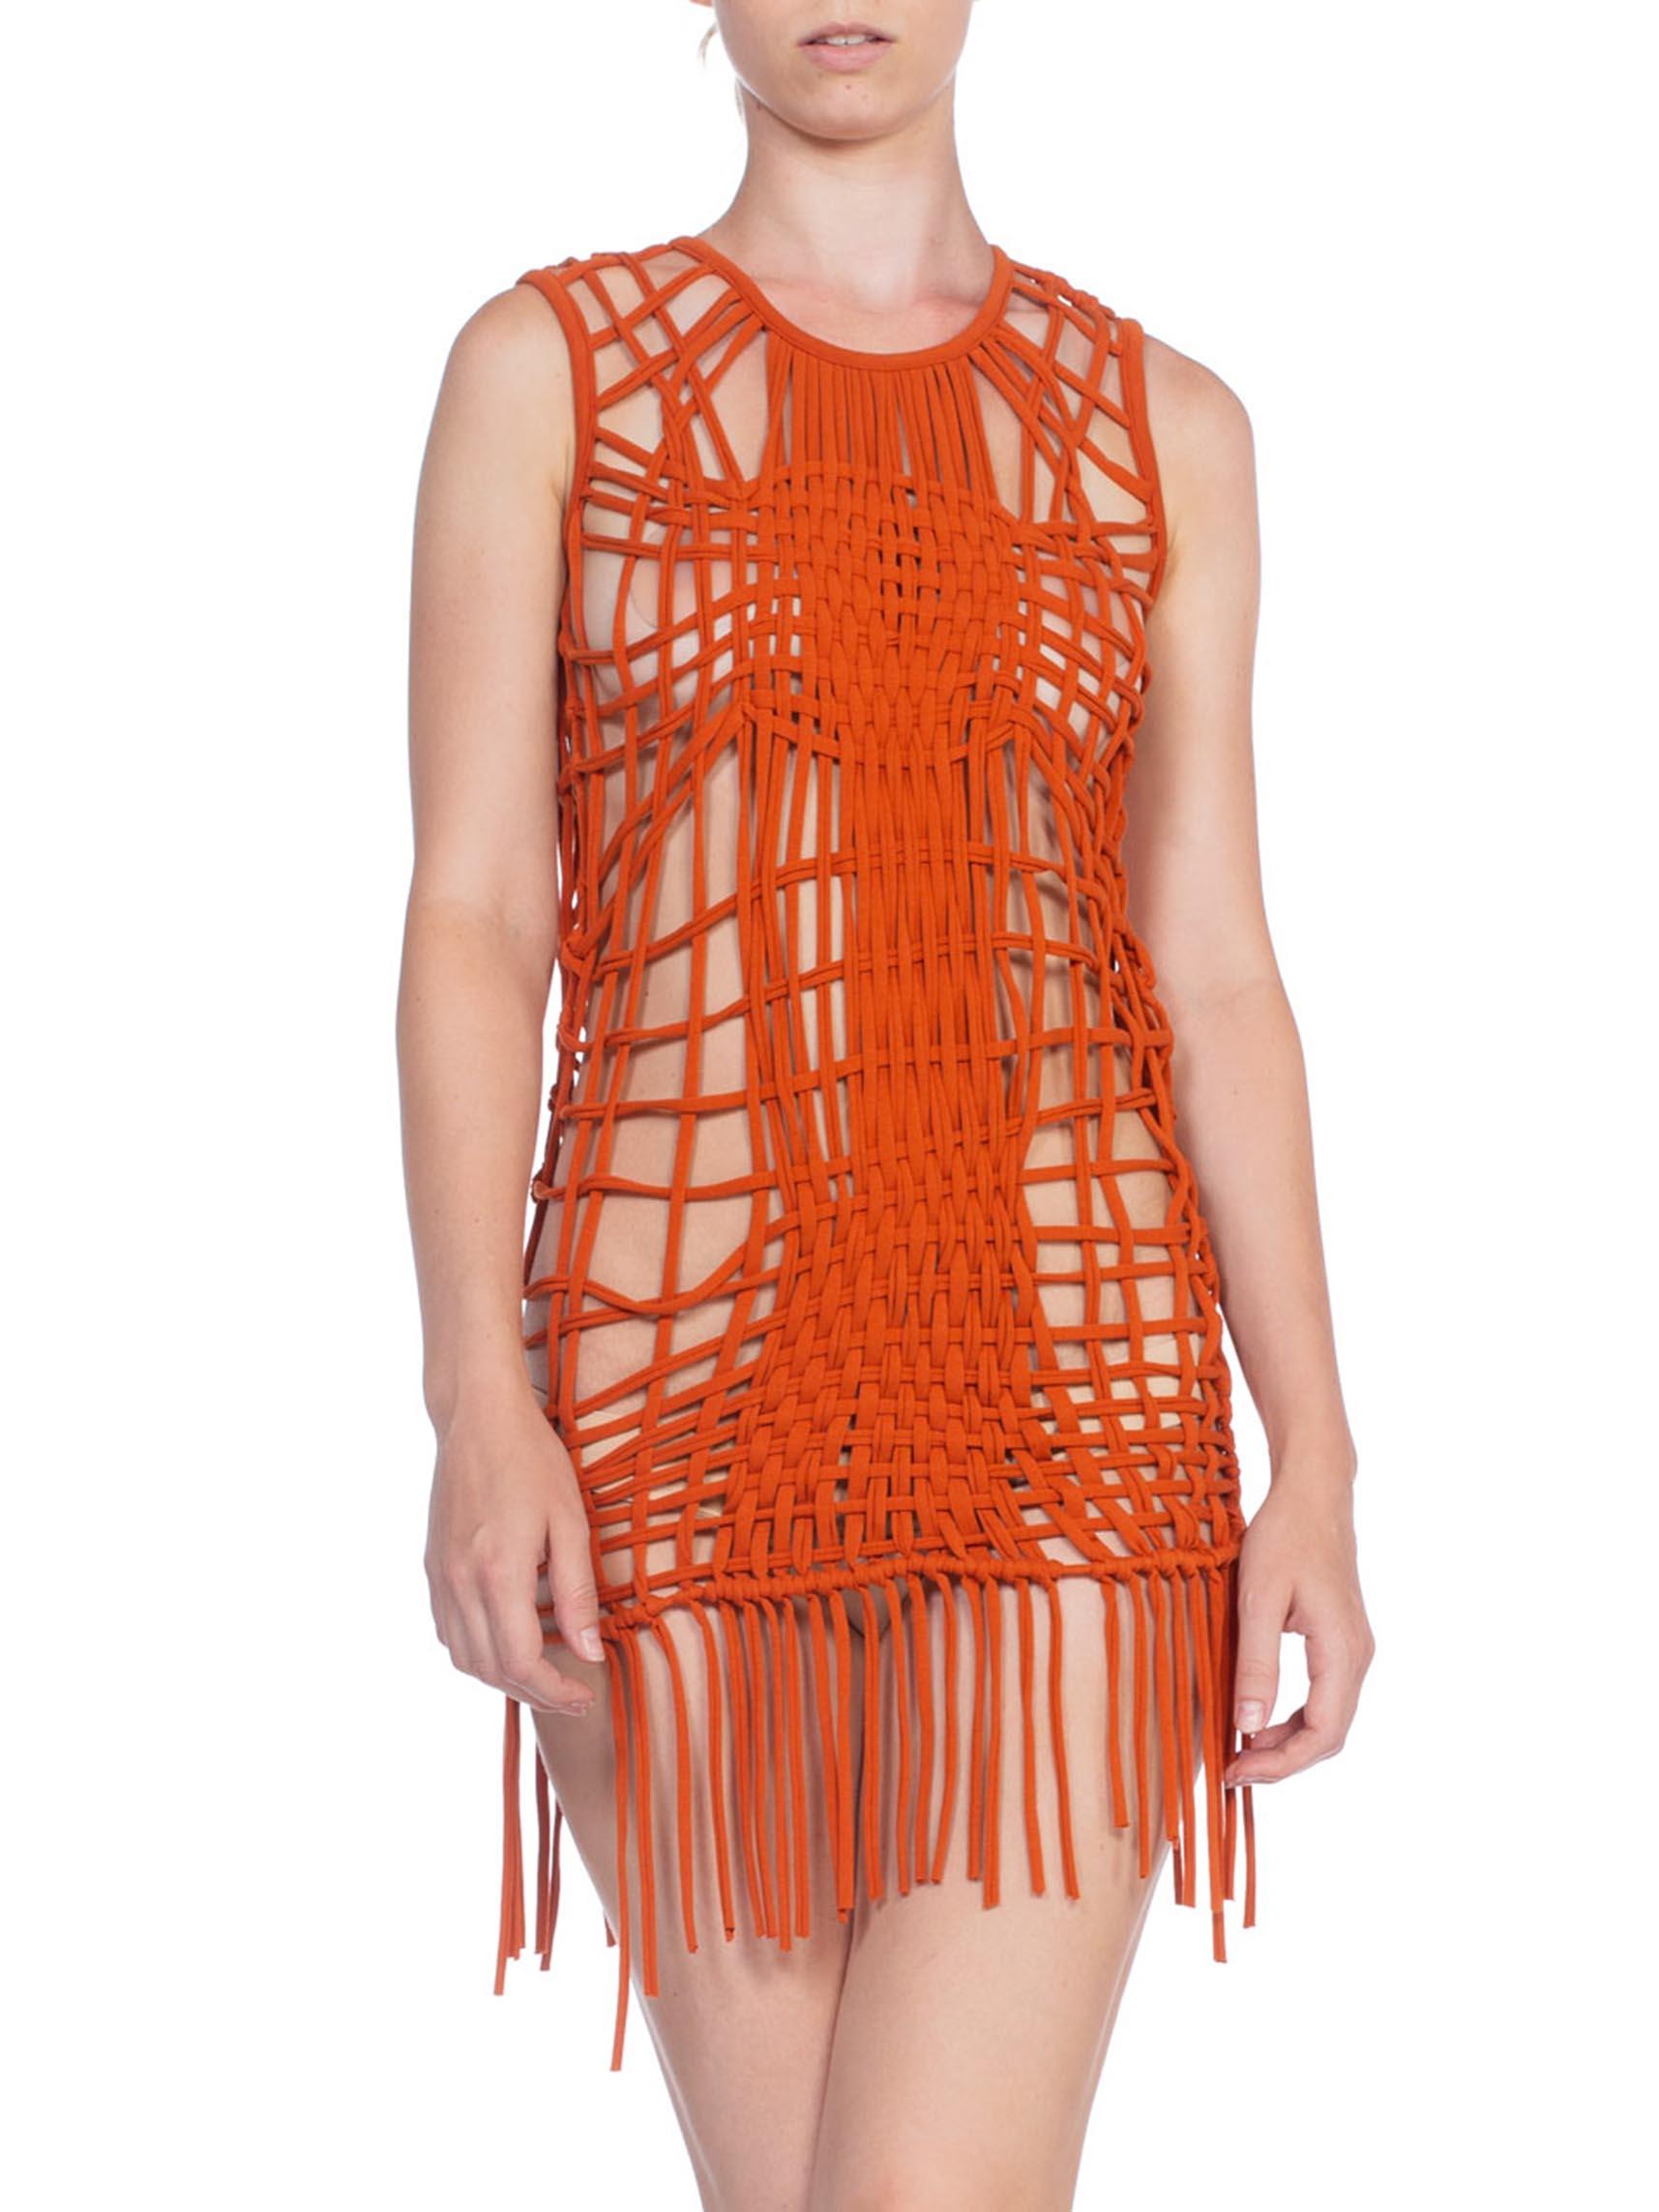 Orange JPG Jean Paul Gaultier Open Knit Top or Dress